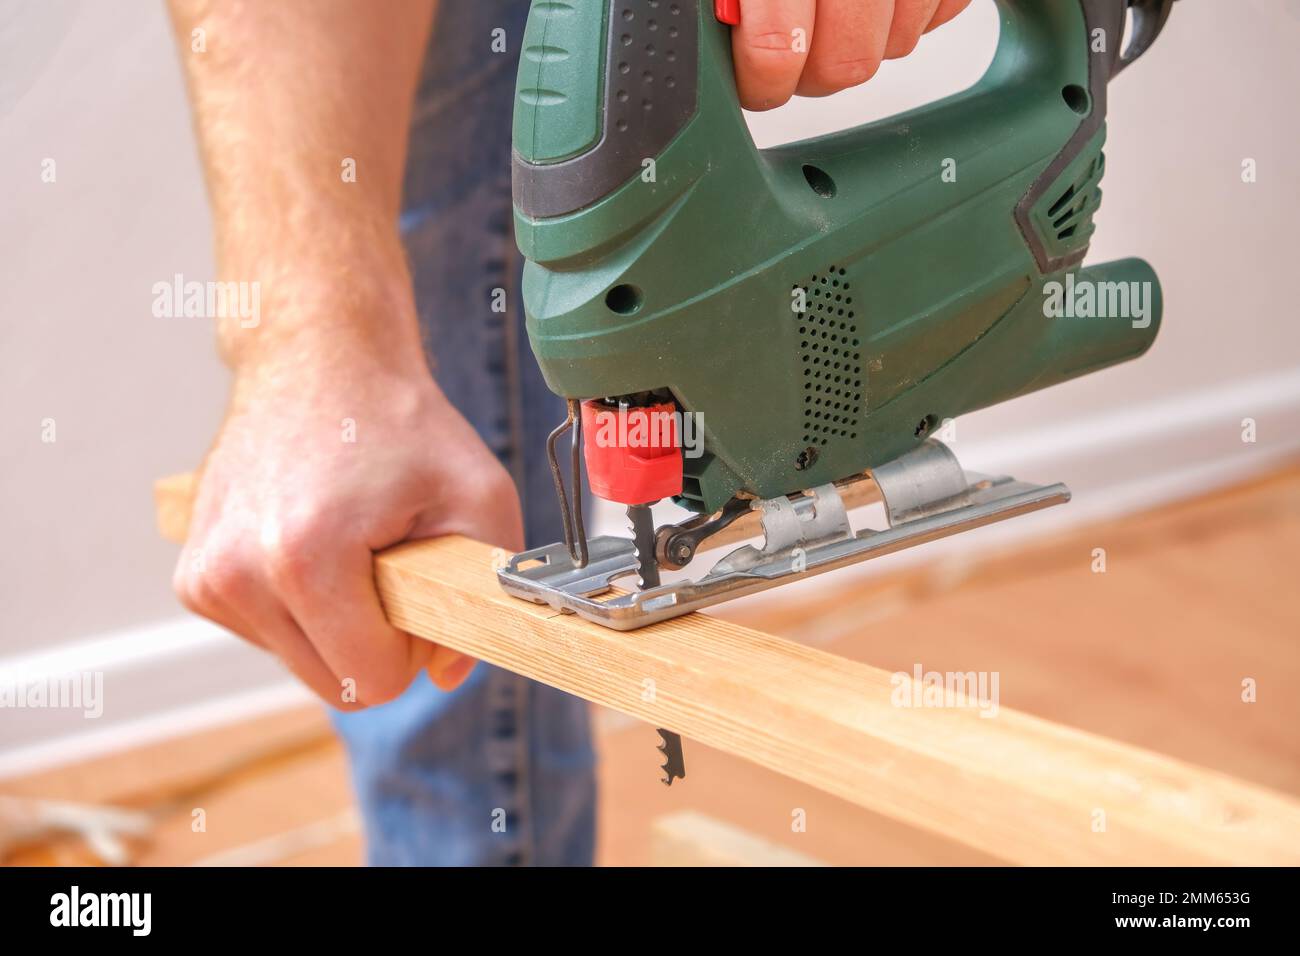 Le mani di un maestro falegname con un seghetto elettrico in mano che  tagliava un pezzo di legno. Mani maschili con sega a tazza per il taglio  del legno. Un falegname taglia